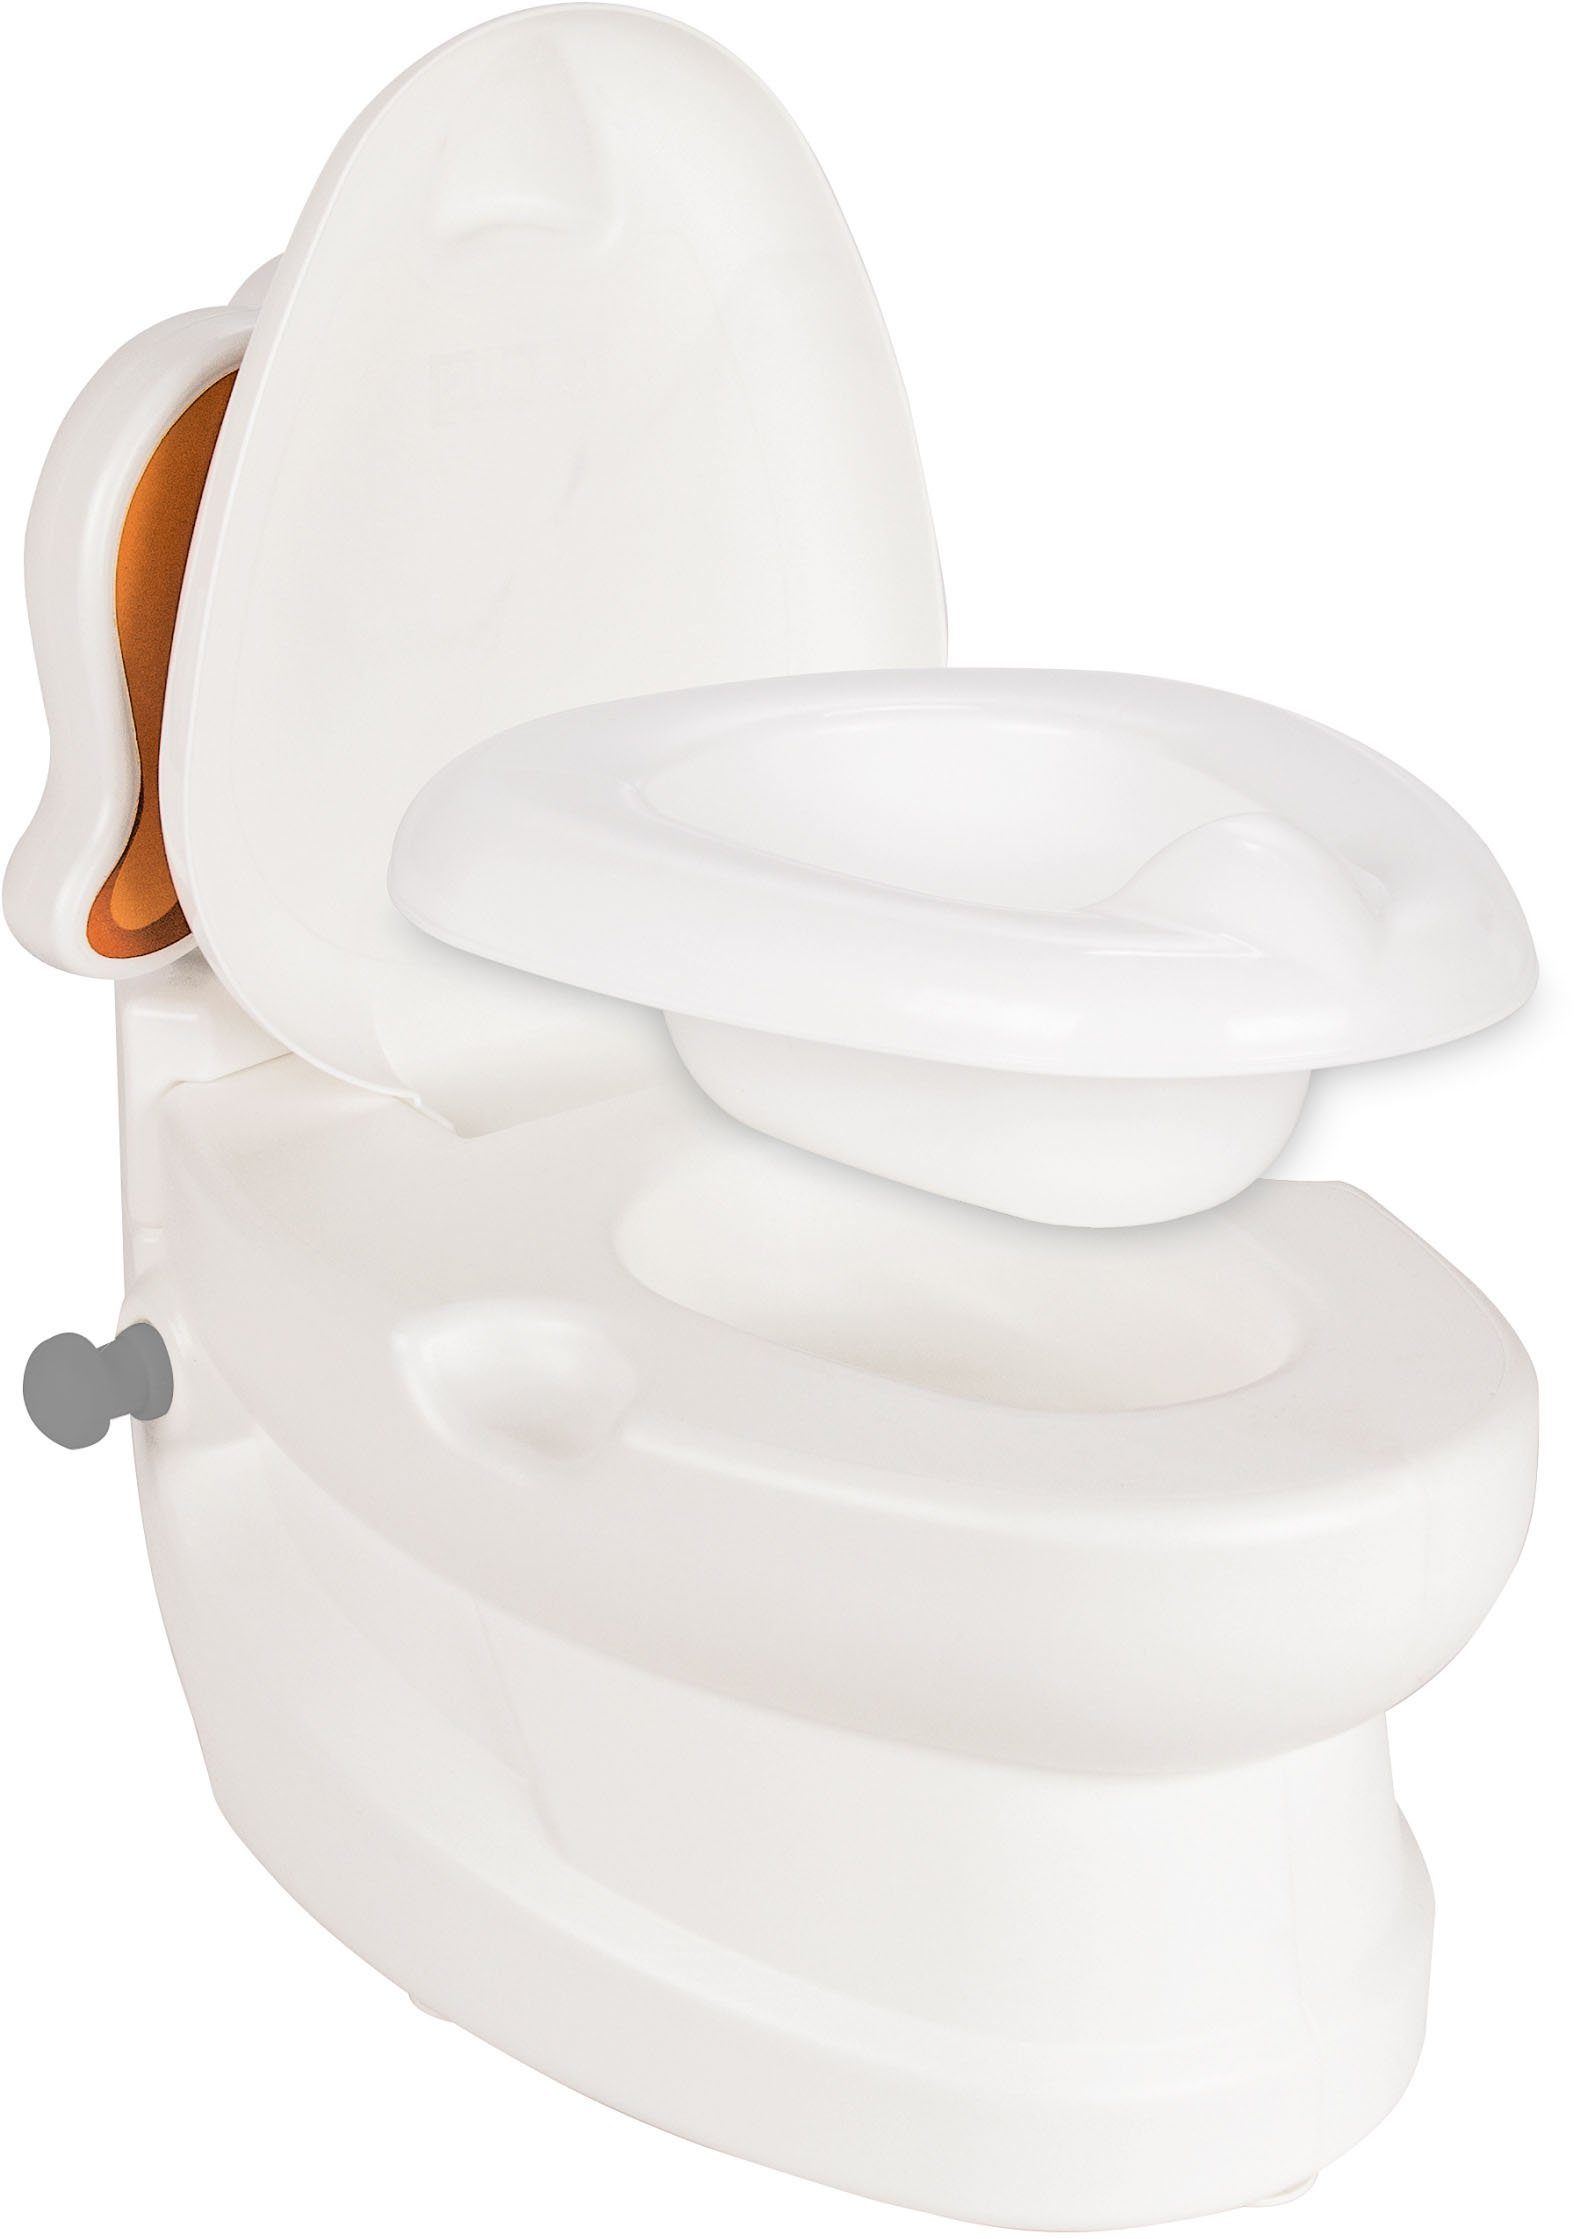 Toilettenpapierhalter kleine Toilettentrainer Toilette, mit Spülsound Meine und Hund, Jamara